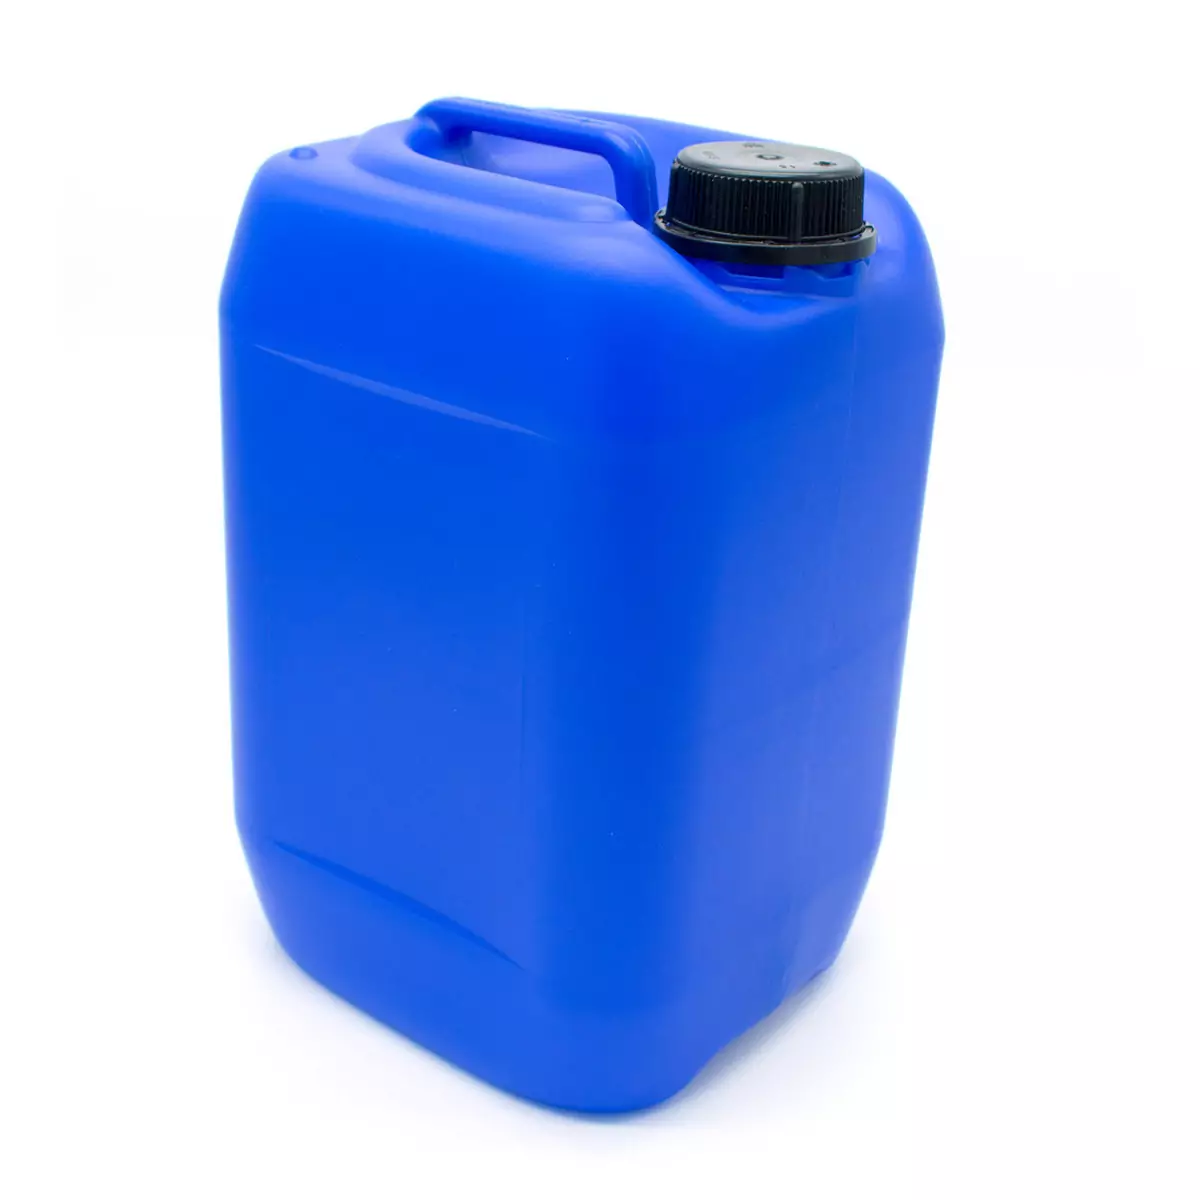 10-Liter-Kanister aus Polyethylen hoher Dichte (HDPE)